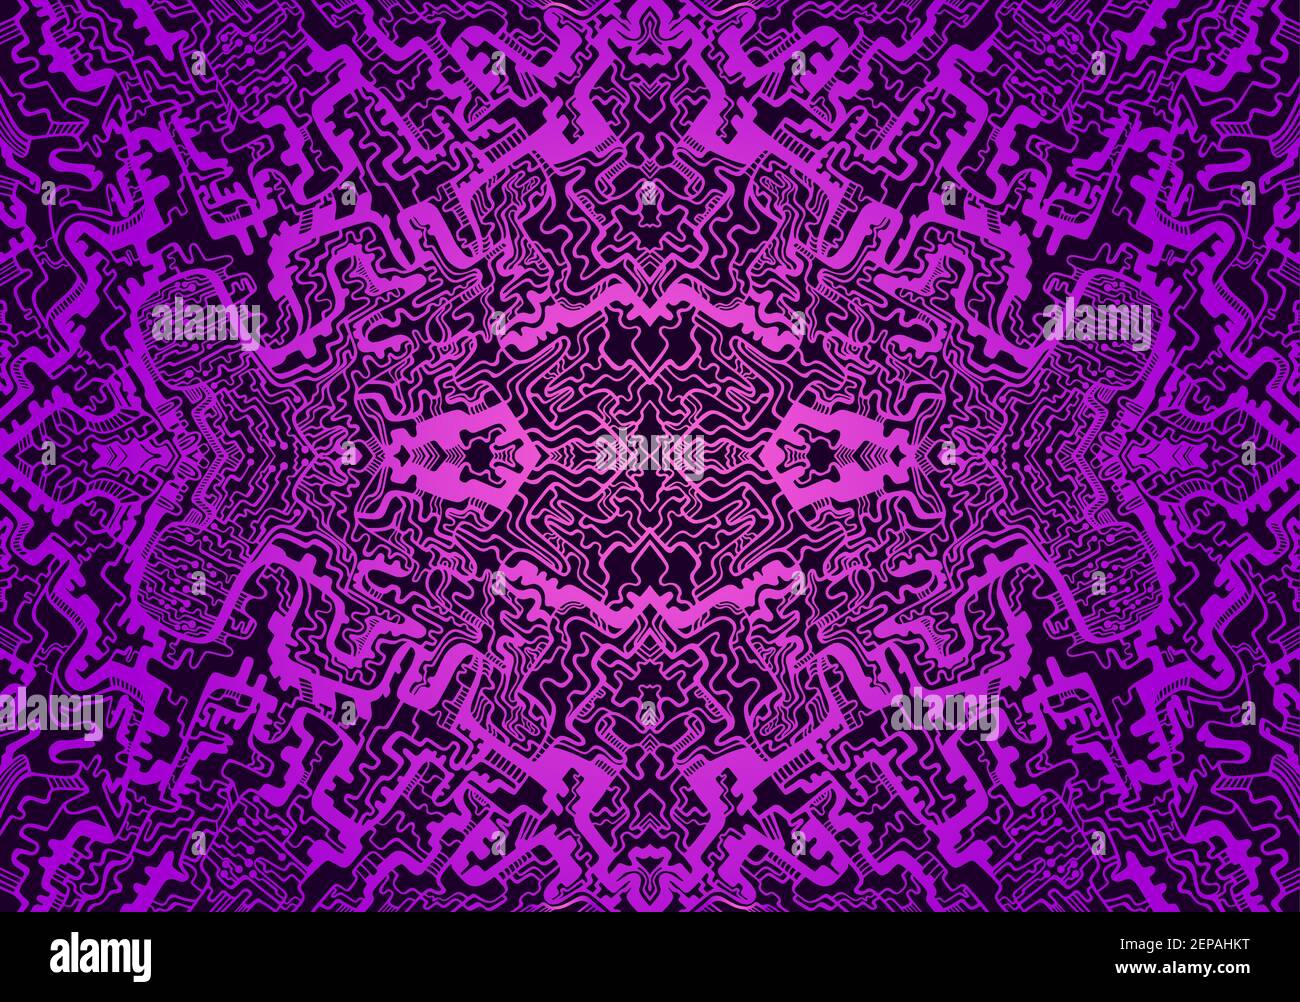 Tryppi psychédélique vintage, motif fractal coloré. Dégradé de couleurs magenta et violet foncé. Mandala abstrait surréaliste décoratif avec labyrinthe d'ornement s. Illustration de Vecteur